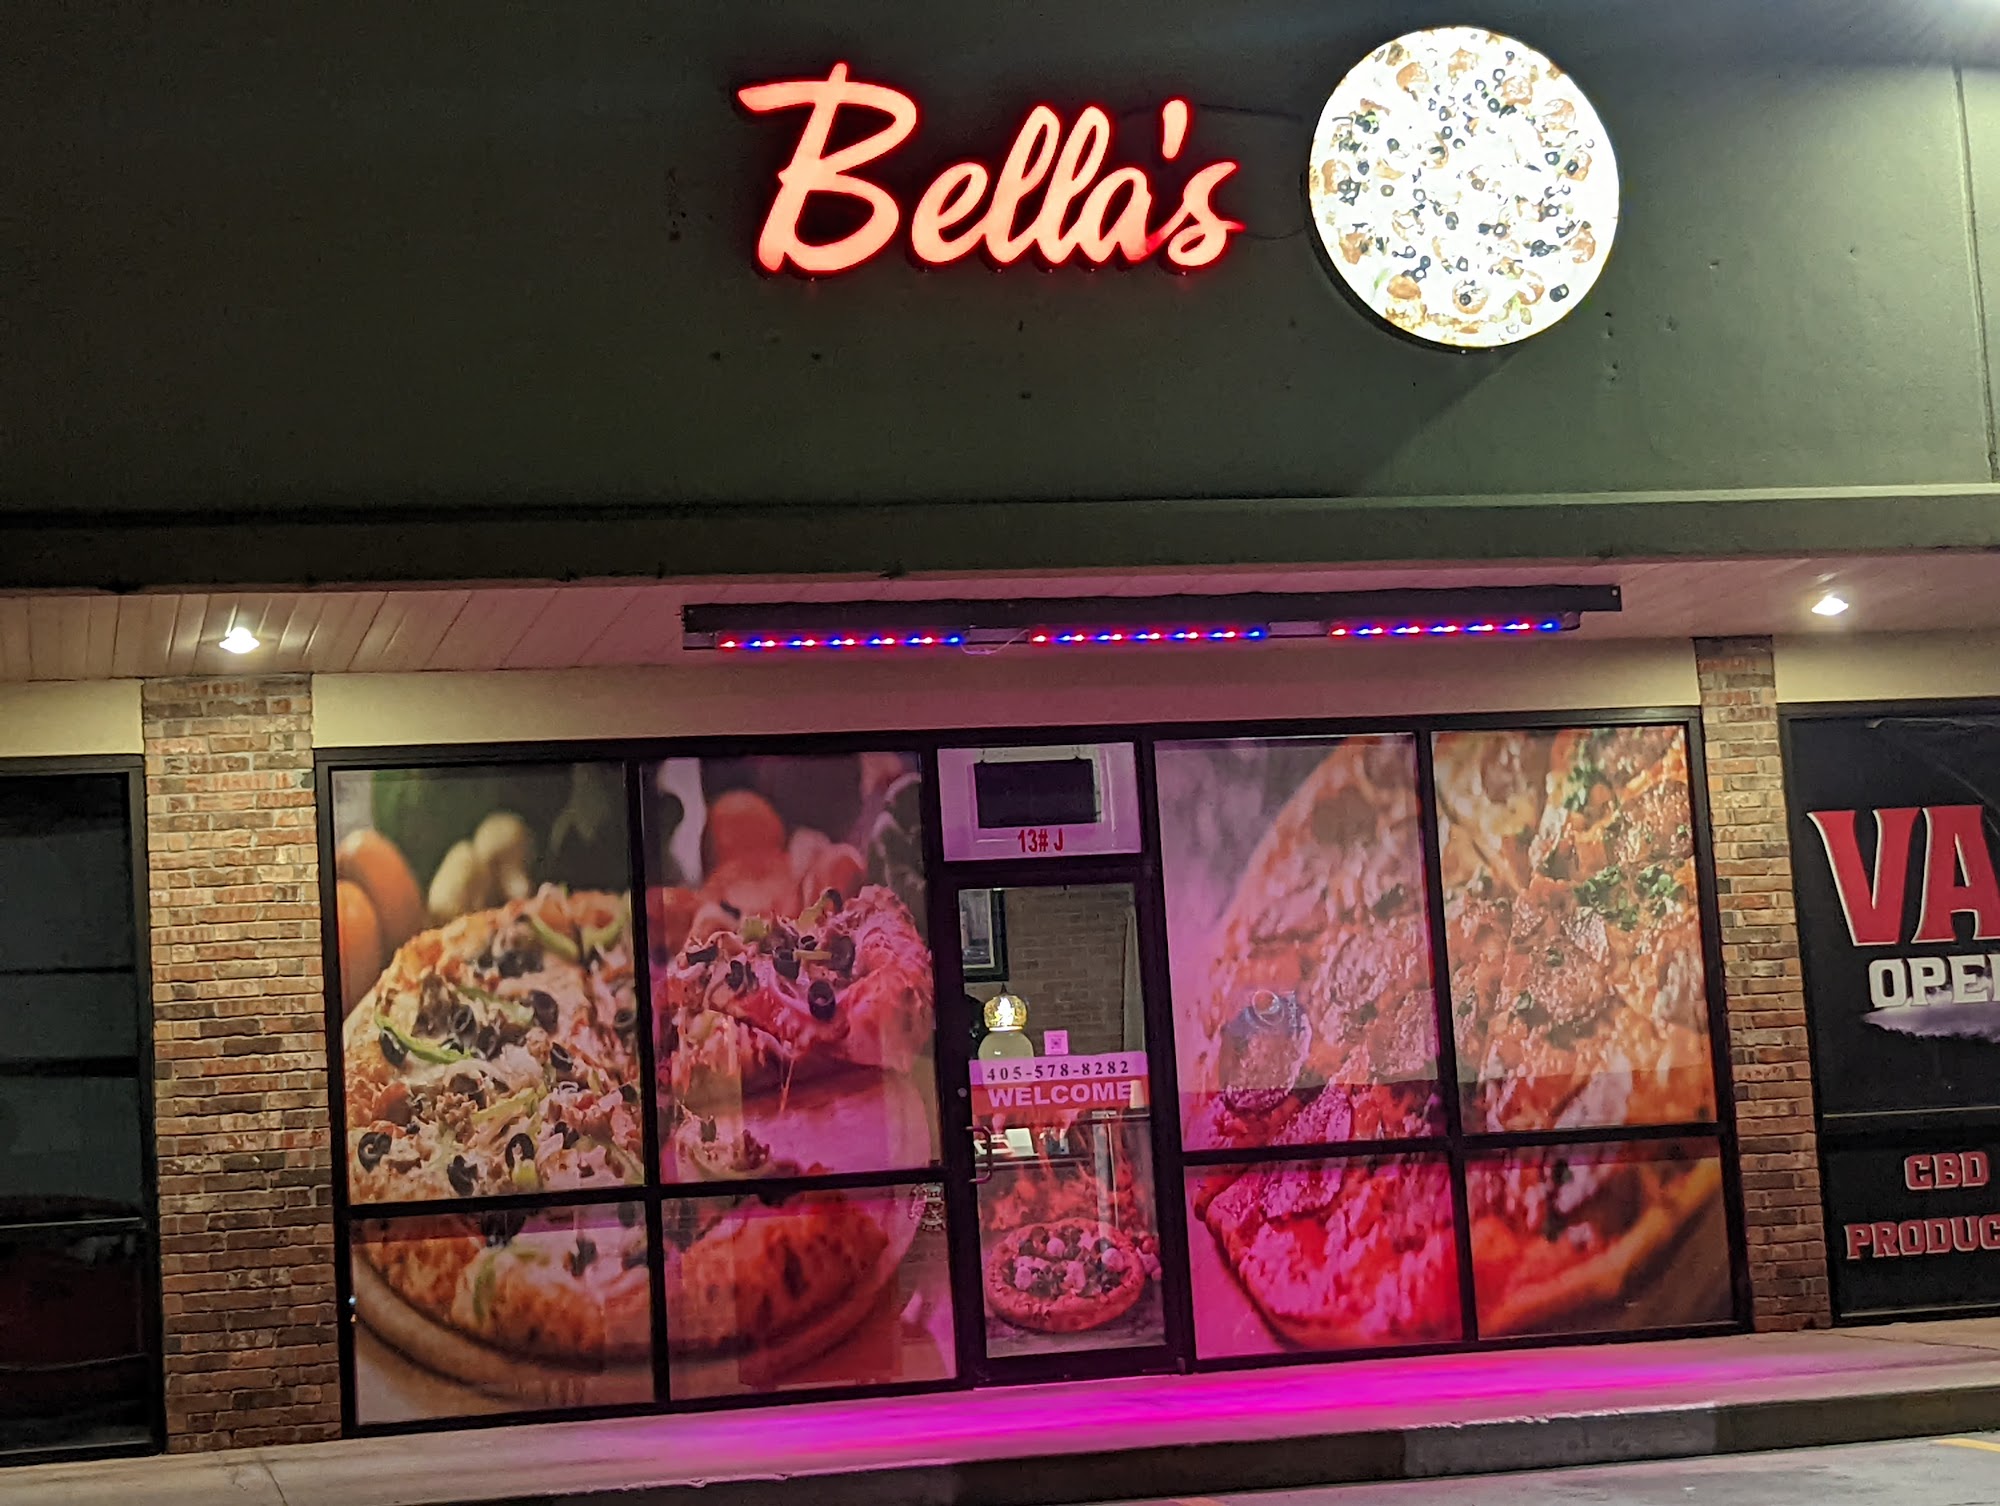 The Original Bella’s Pizzeria